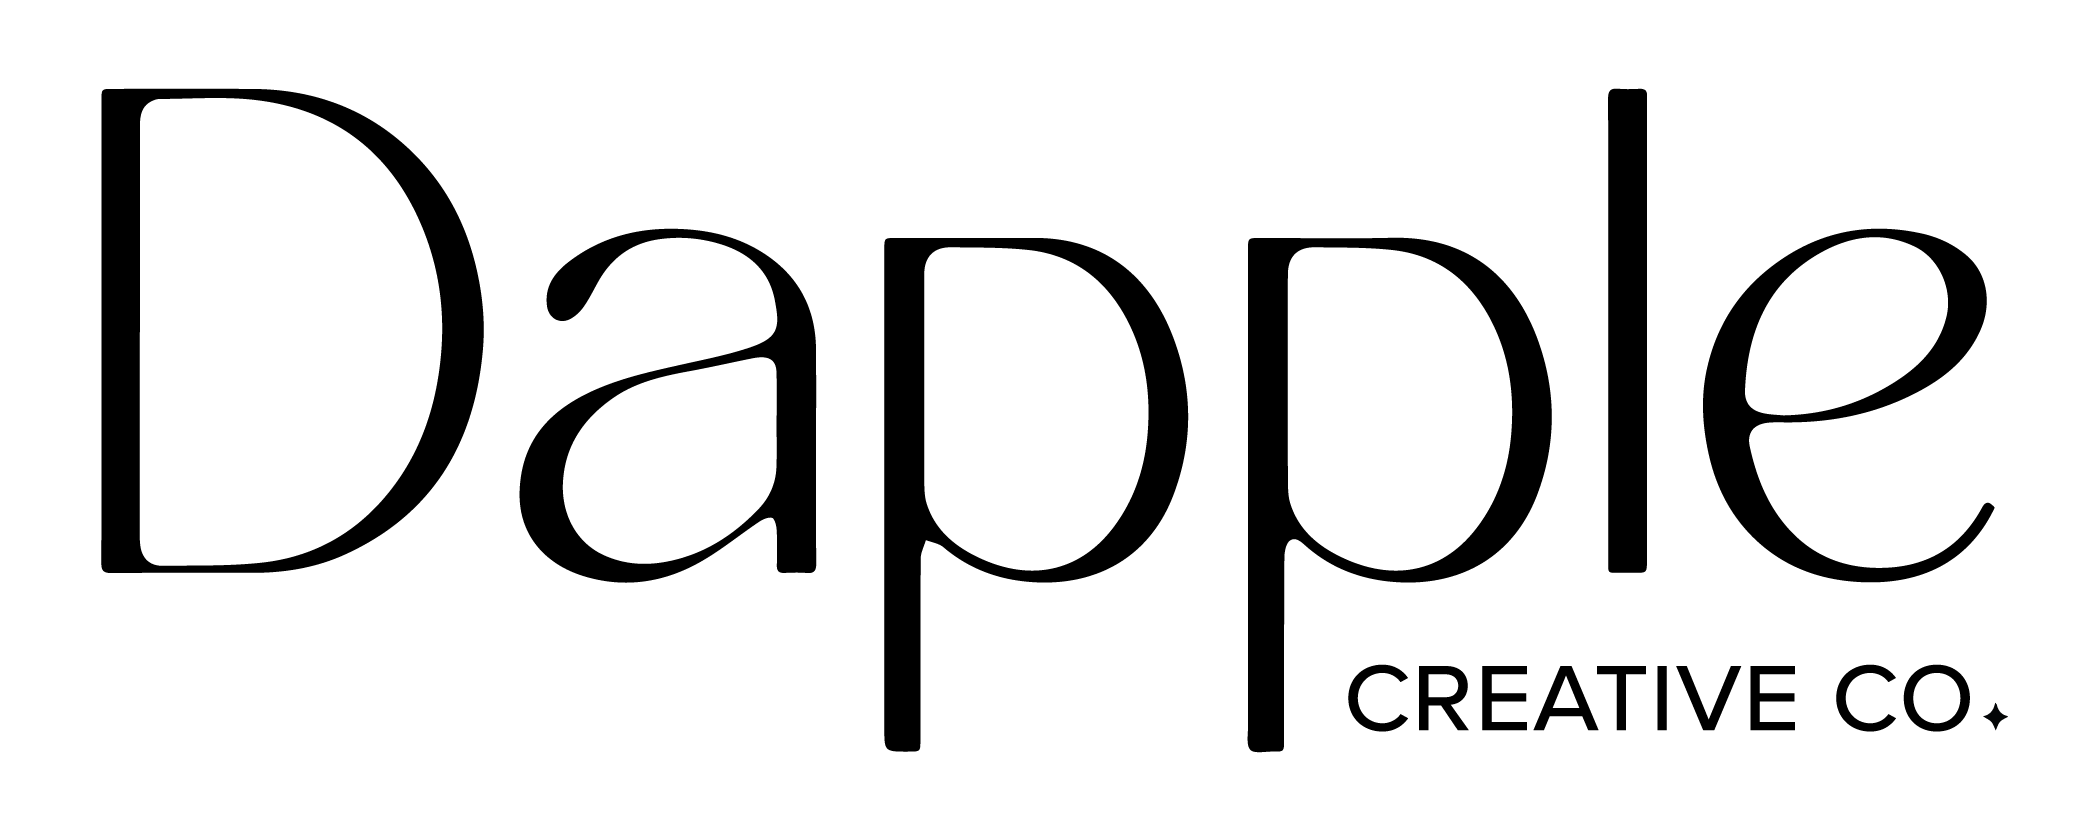 Dapple Creative Co. Logo